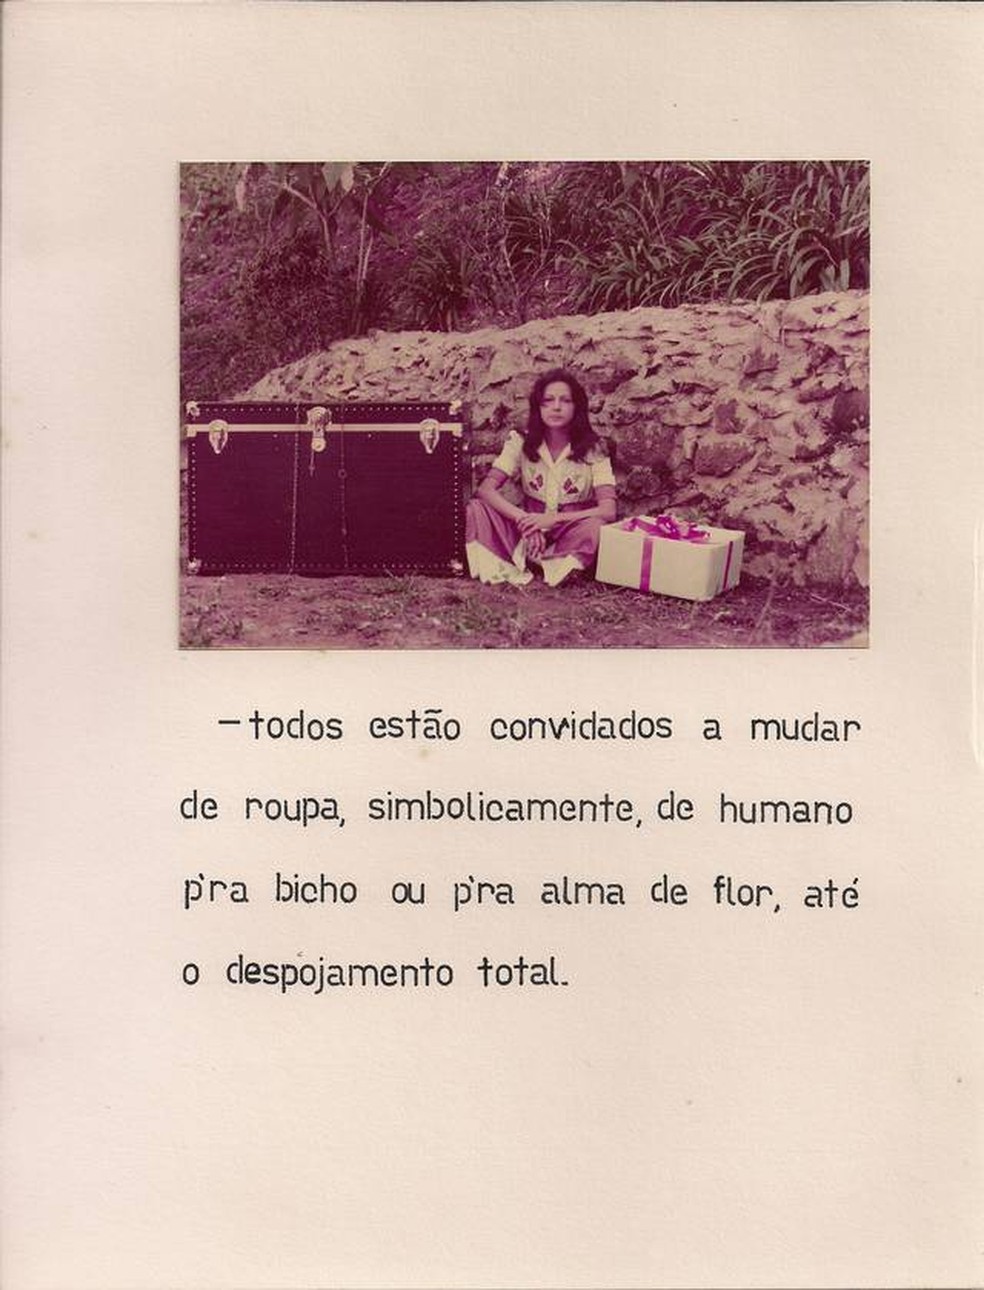 Imagem da obra 'Pele de bicho, alma de flor', de Yolanda Freire, que fez parte da exposição 'Mulheres radicais' na Pinacoteca de SP — Foto: Divulgação